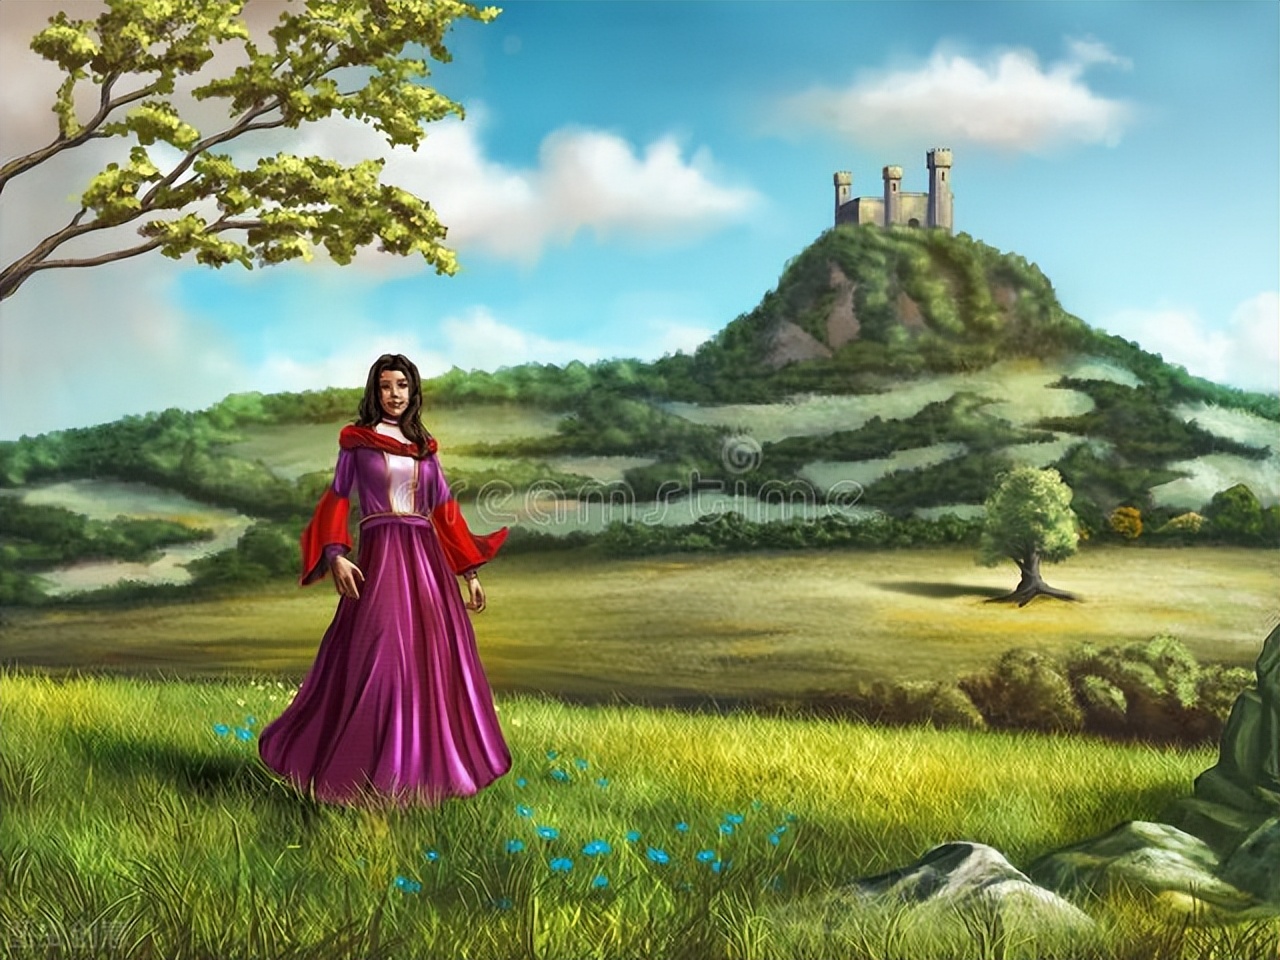 巴西民间故事《公主变兔子》公主如何解除自身的魔法